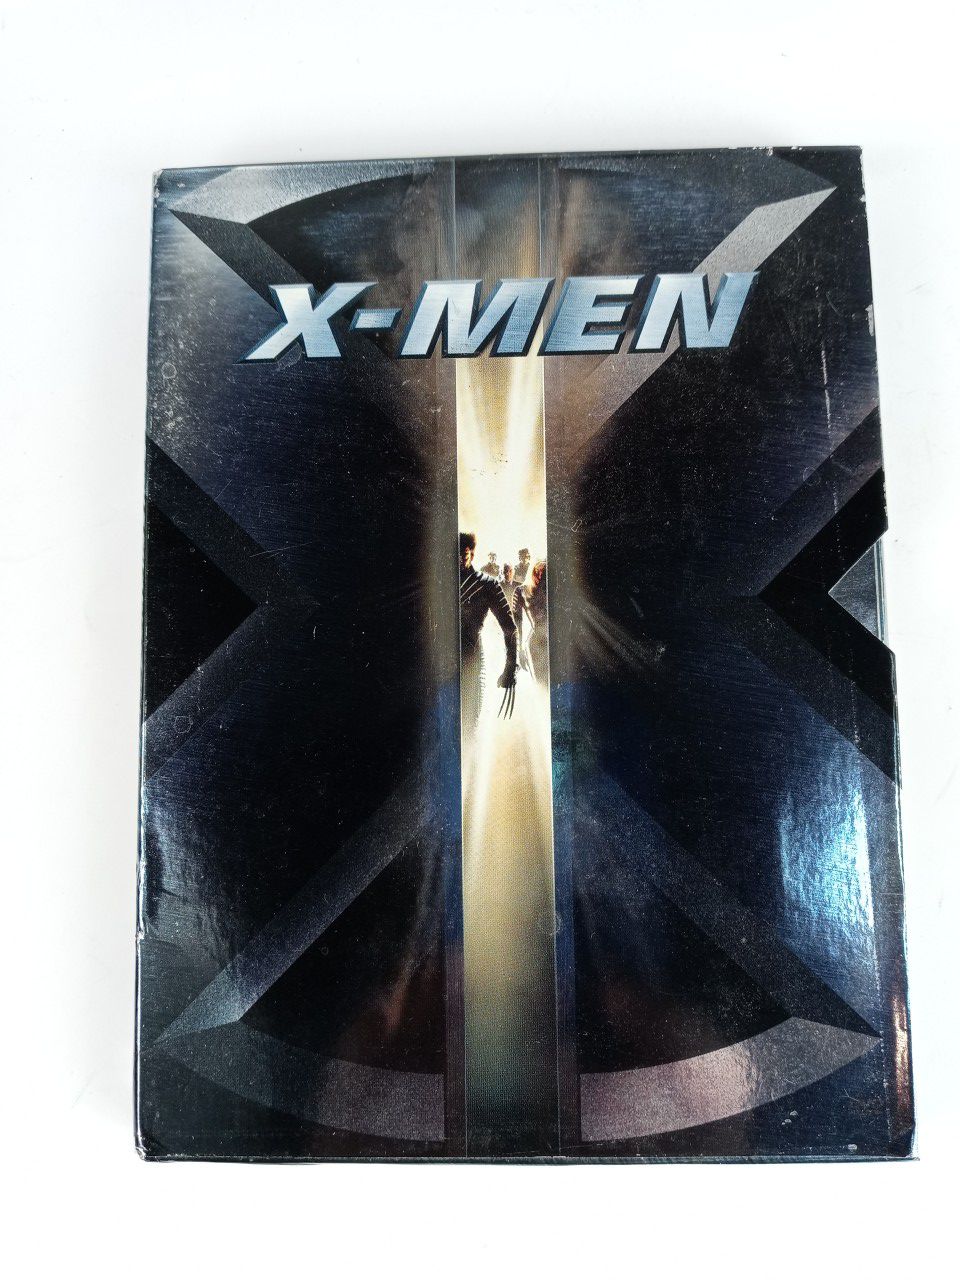 X-Men (DVD, 2000, Sensormatic)